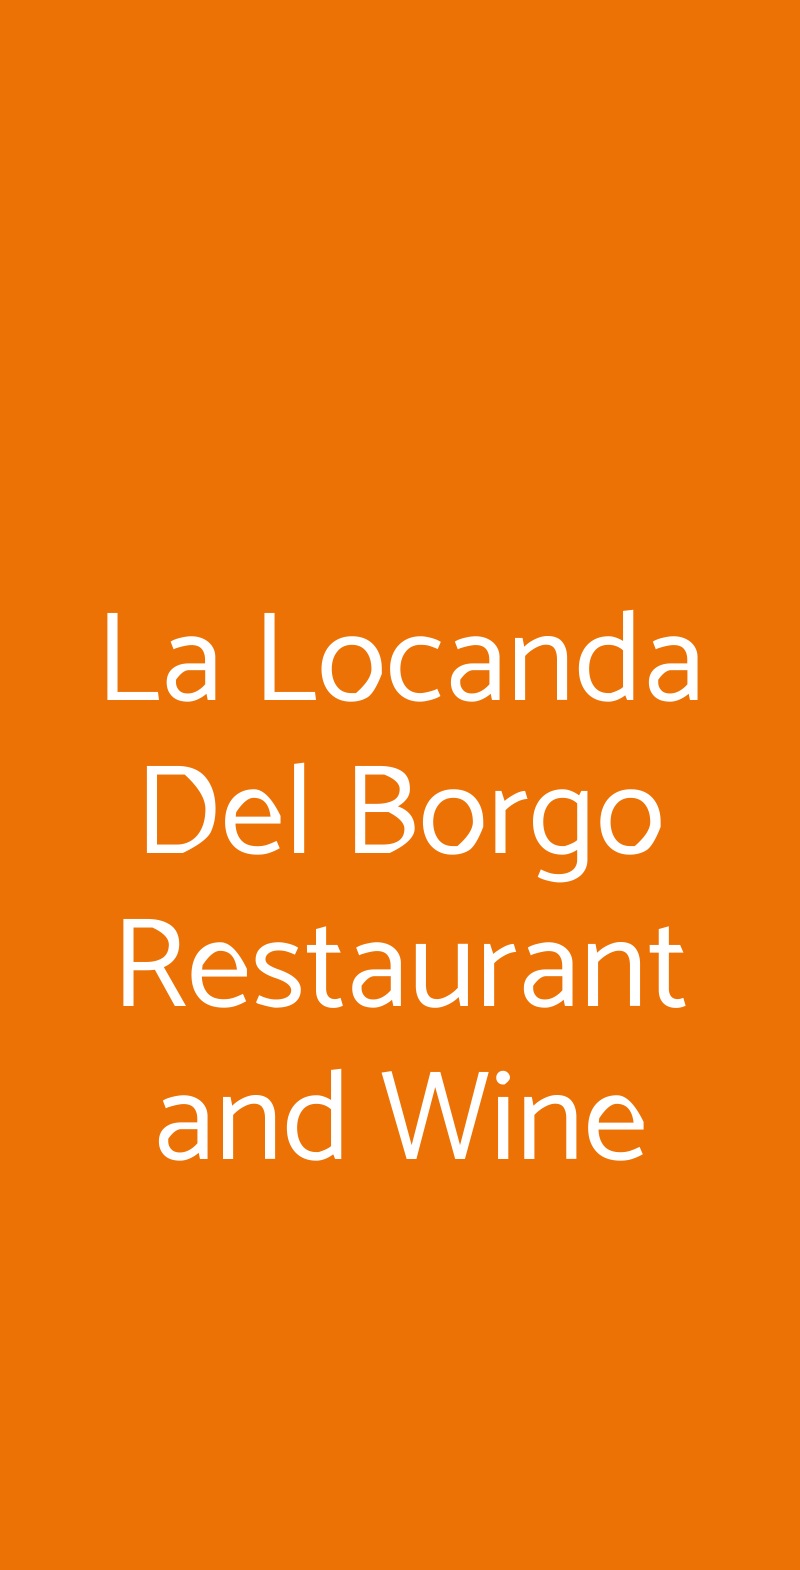 La Locanda Del Borgo Restaurant and Wine Catania menù 1 pagina